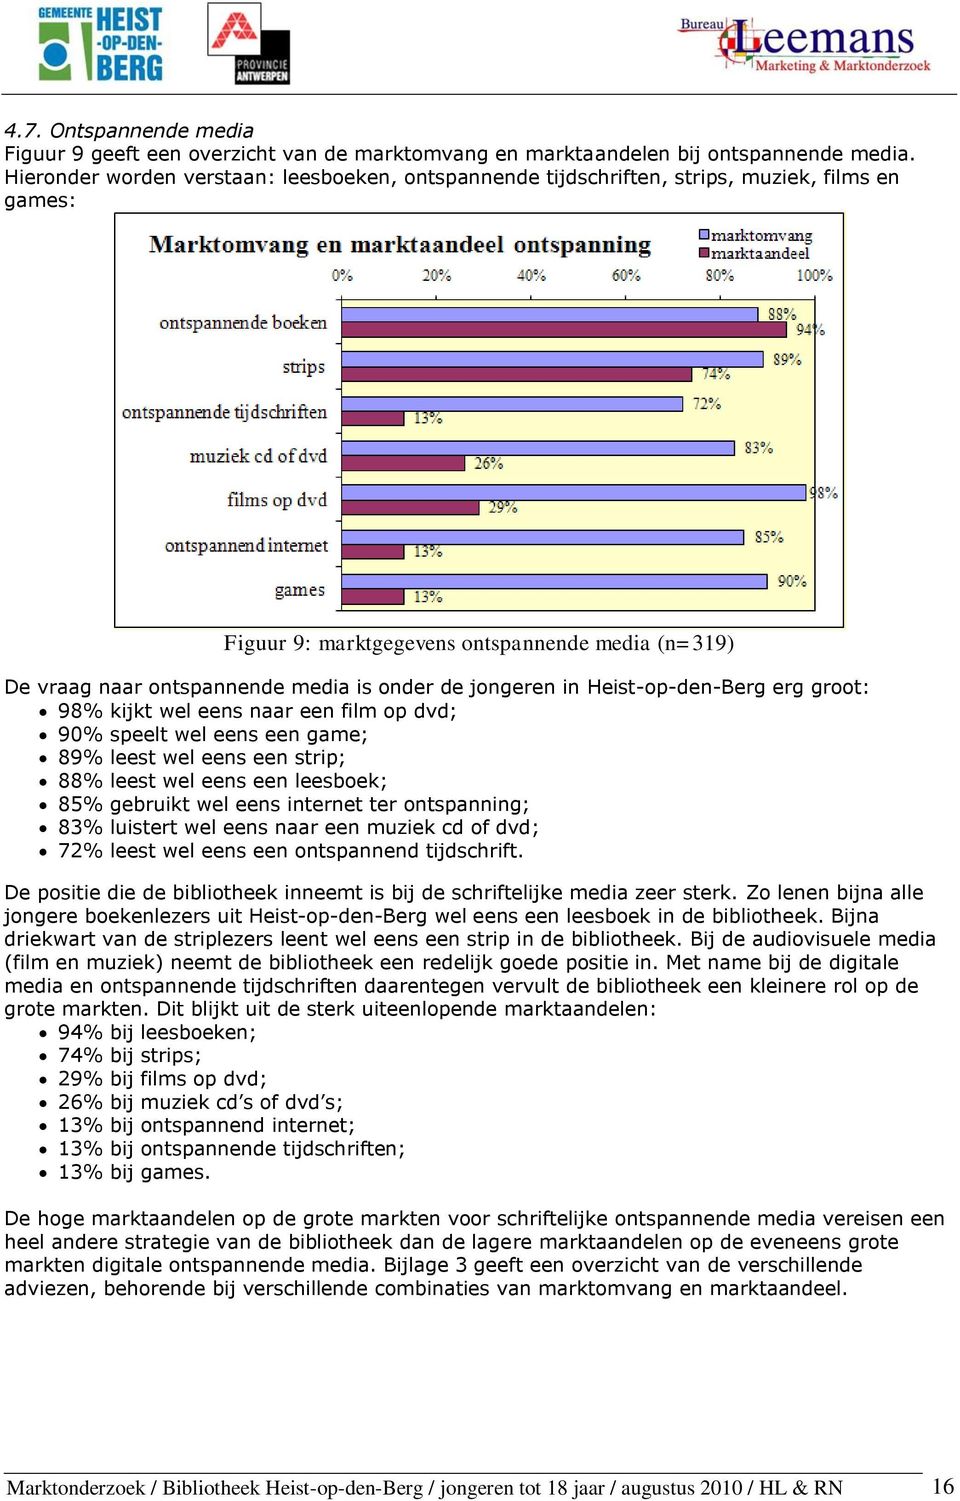 jongeren in Heist-op-den-Berg erg groot: 98% kijkt wel eens naar een film op dvd; 90% speelt wel eens een game; 89% leest wel eens een strip; 88% leest wel eens een leesboek; 85% gebruikt wel eens